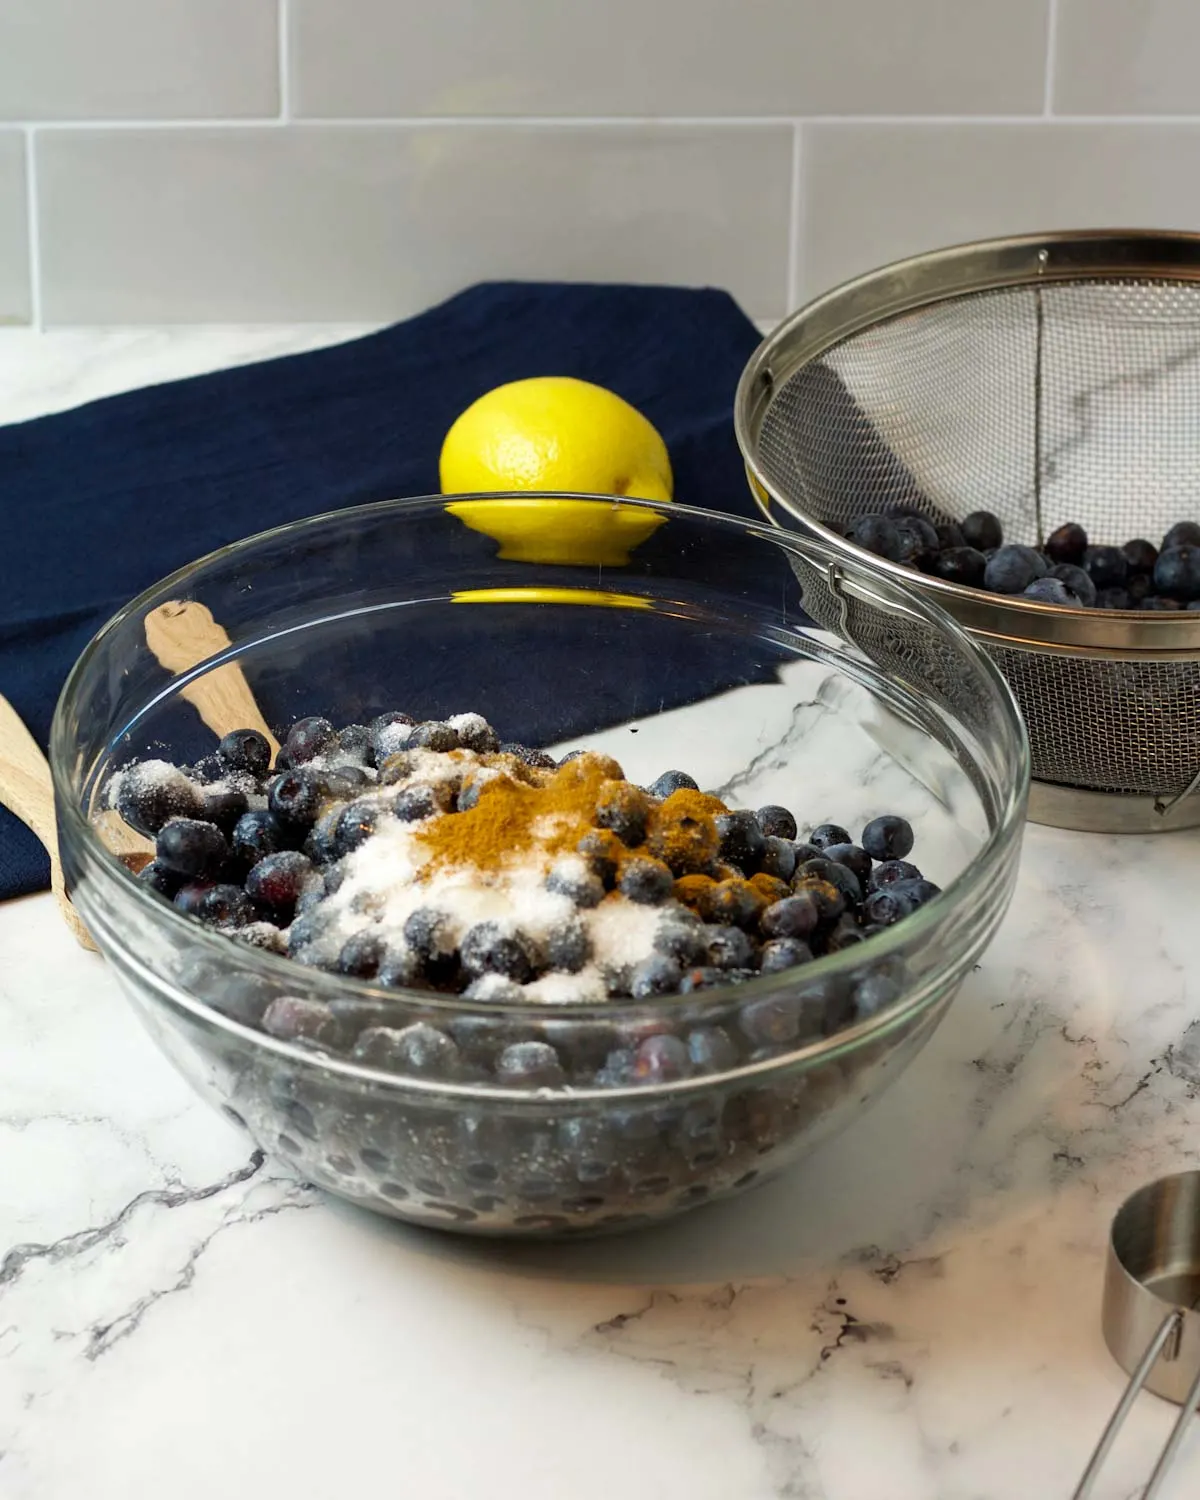 Ingredients in a bowl: blueberries, sugar, cinnamon, vanilla, and lemon juice.